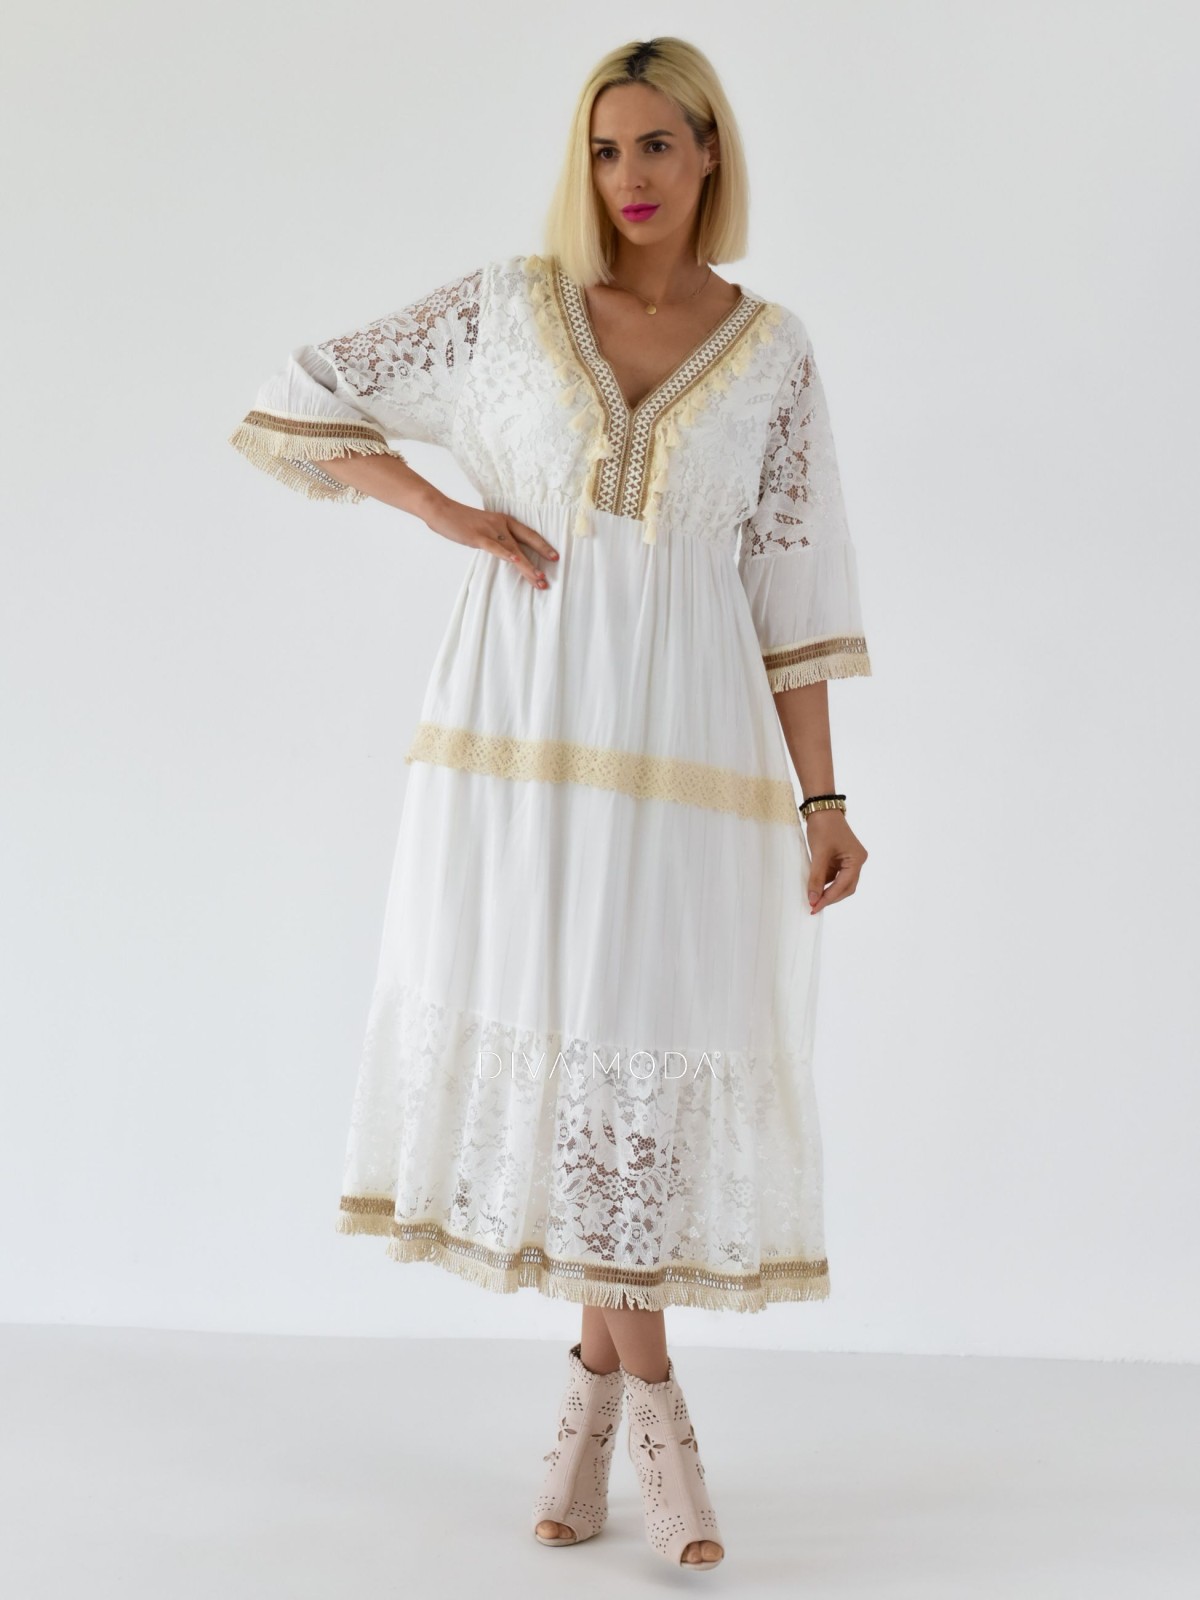 Letní maxi šaty s třásněmi Becca bílé A 255